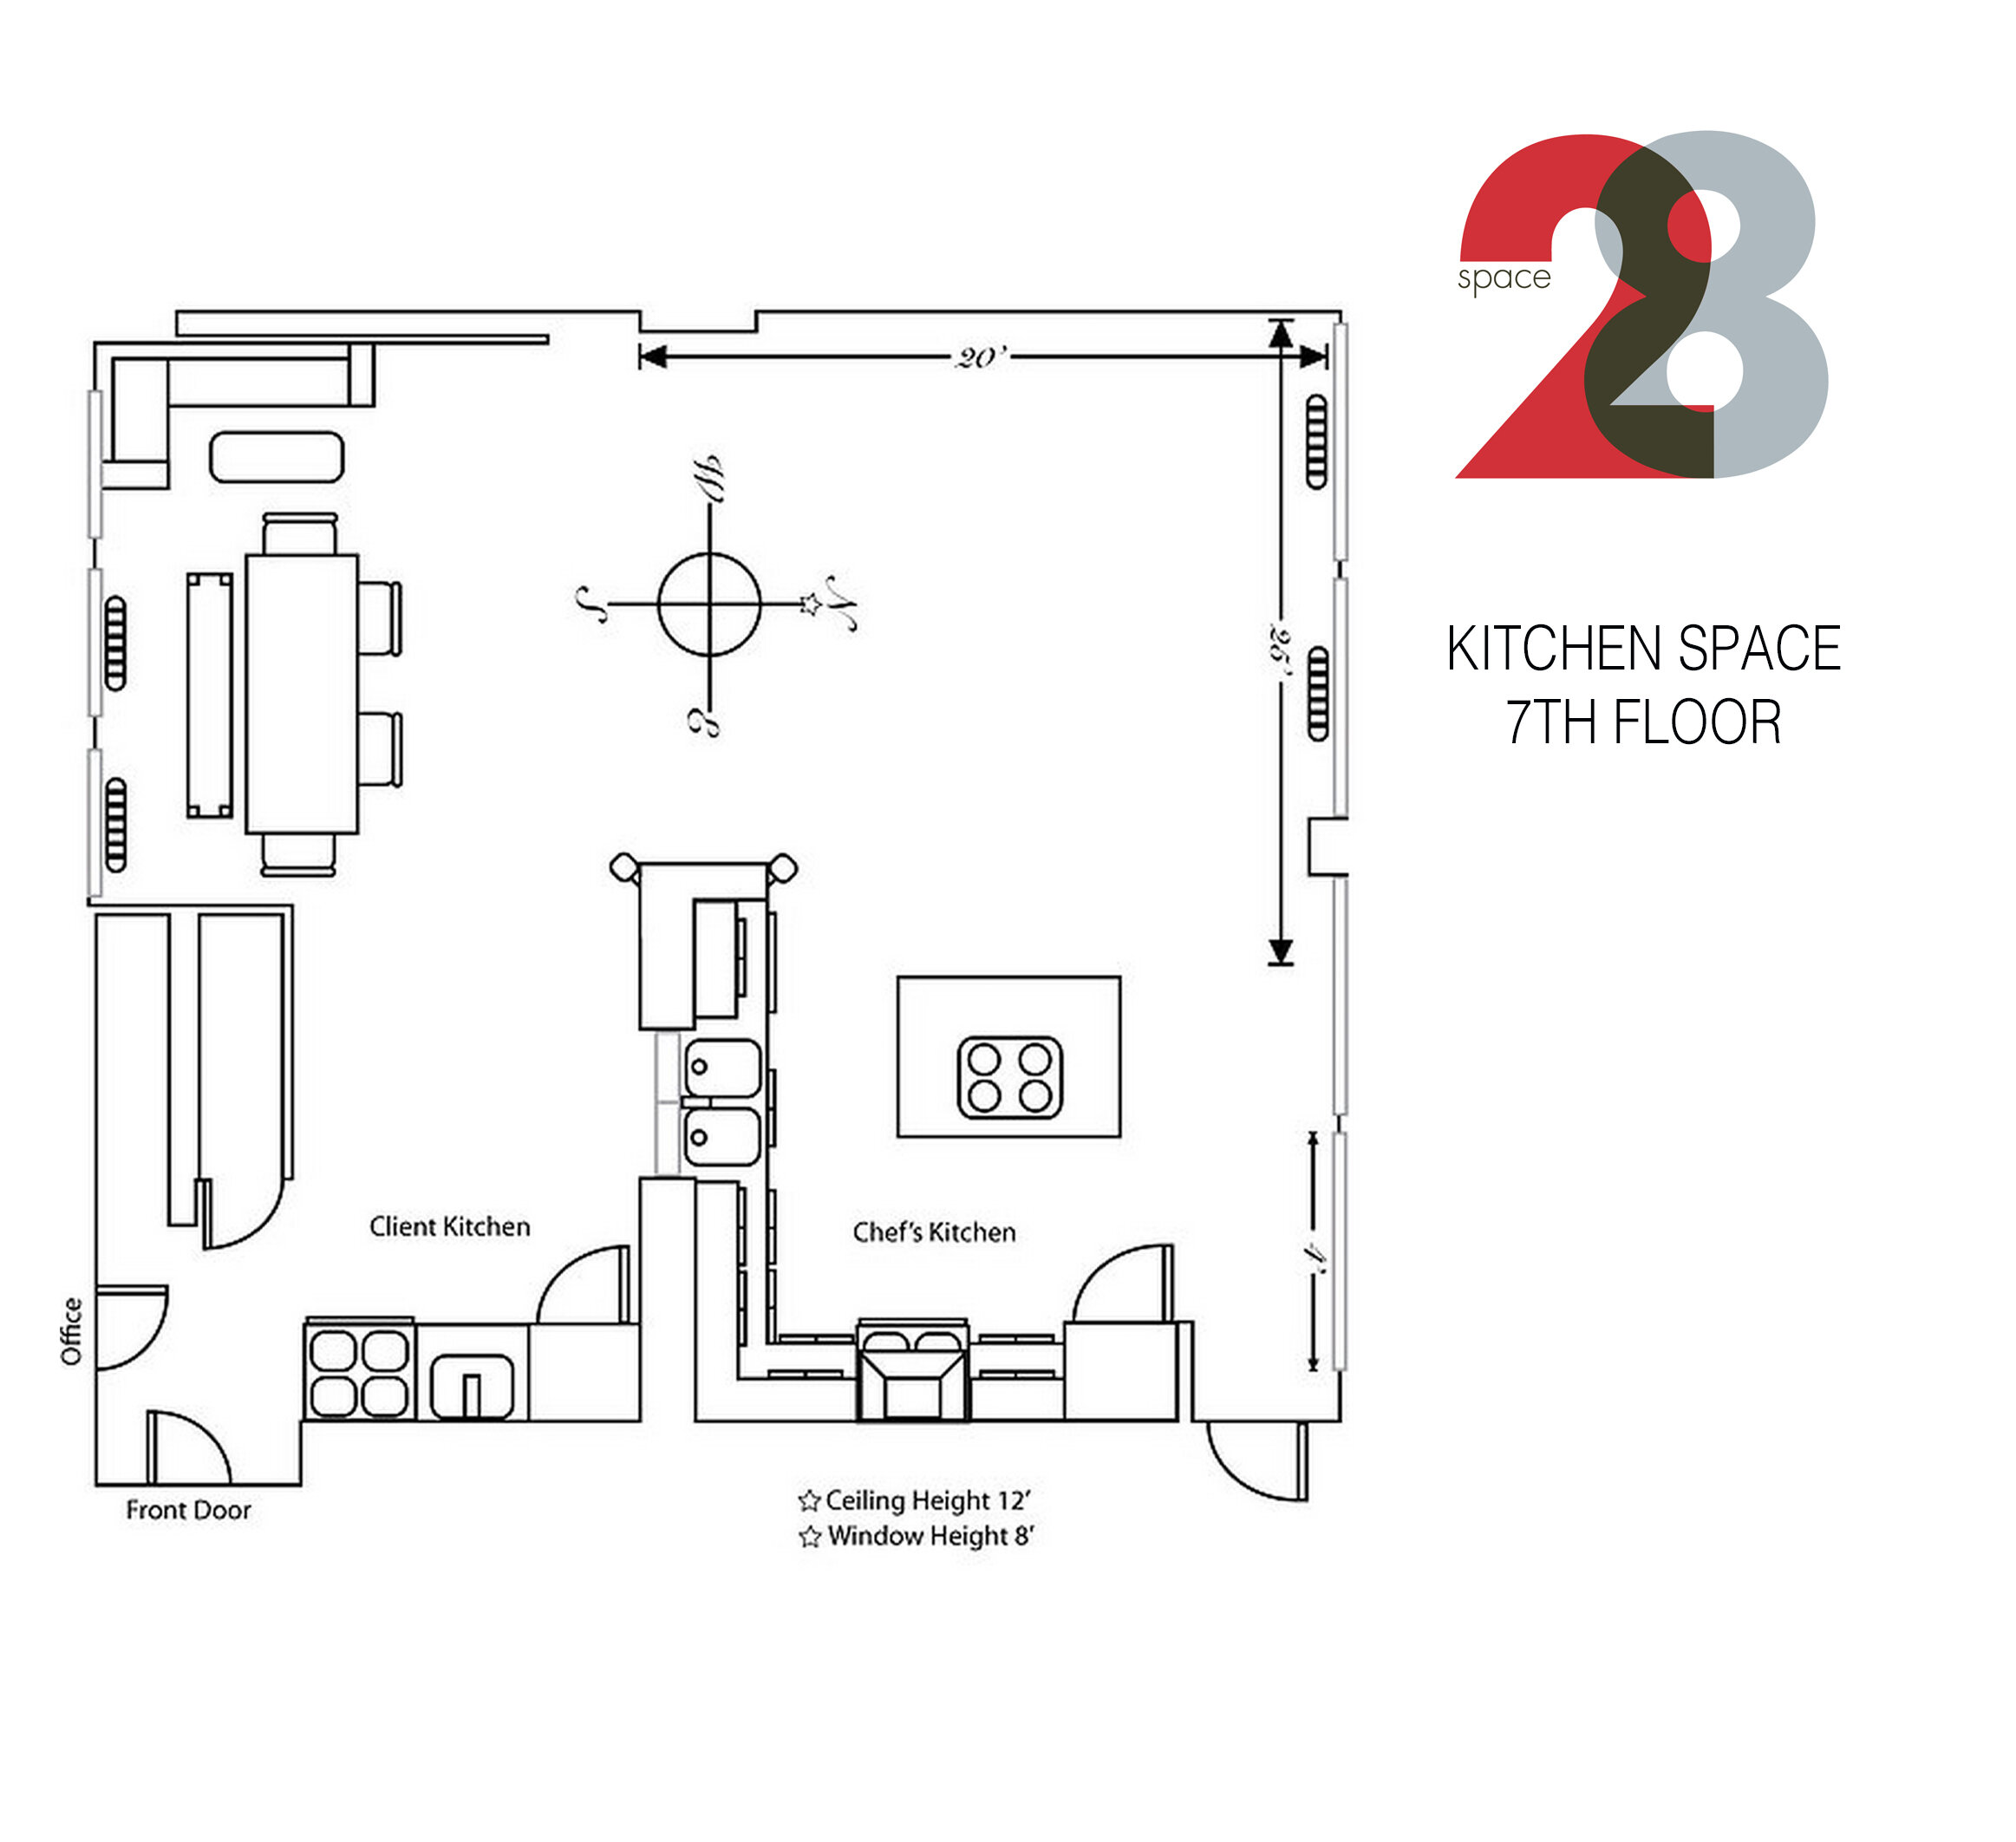 Kitchen 7 Floorplan